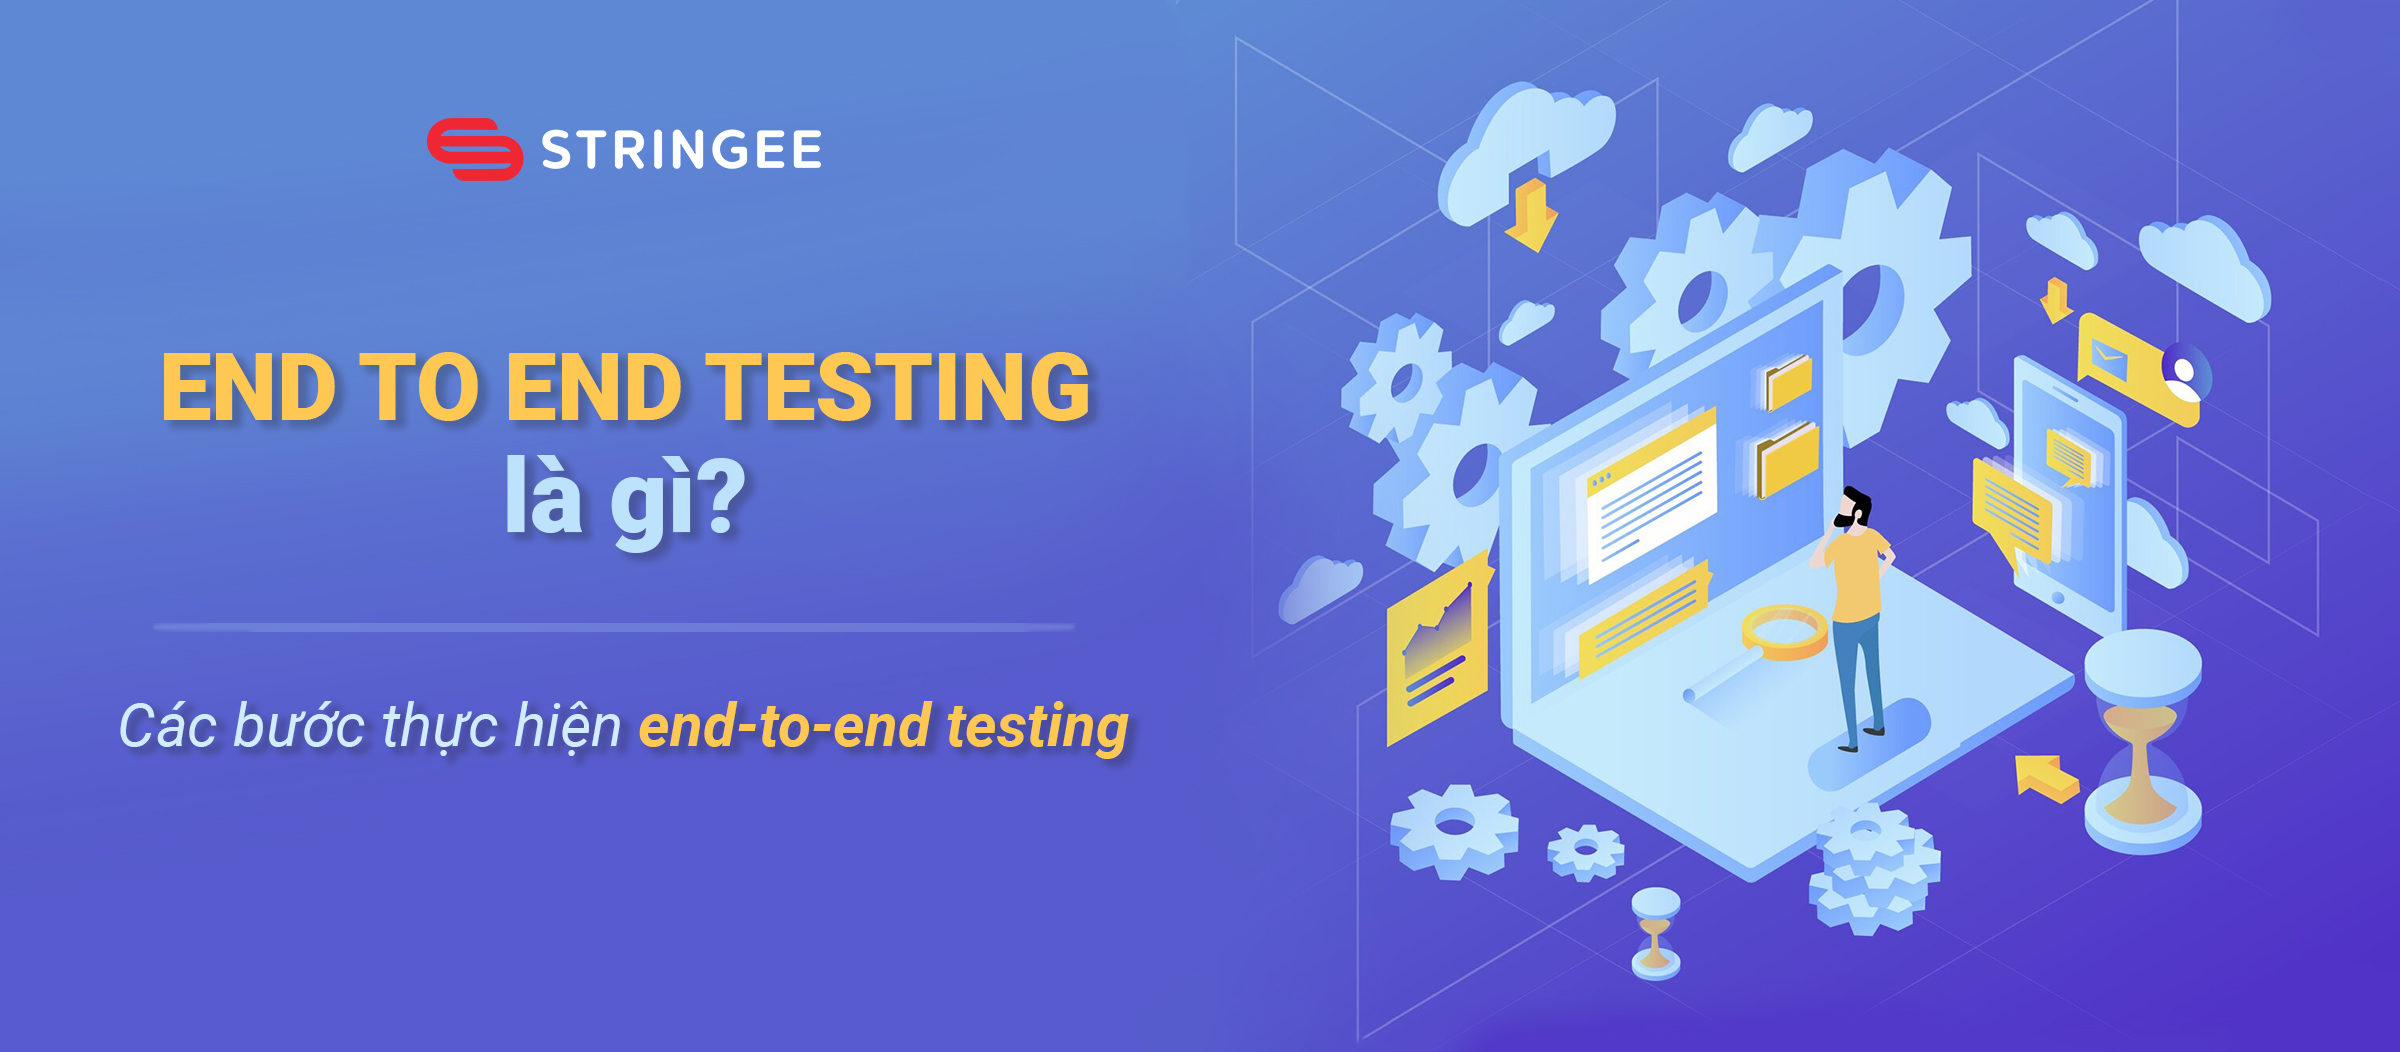 End-to-end testing là gì? Các bước thực hiện end-to-end testing